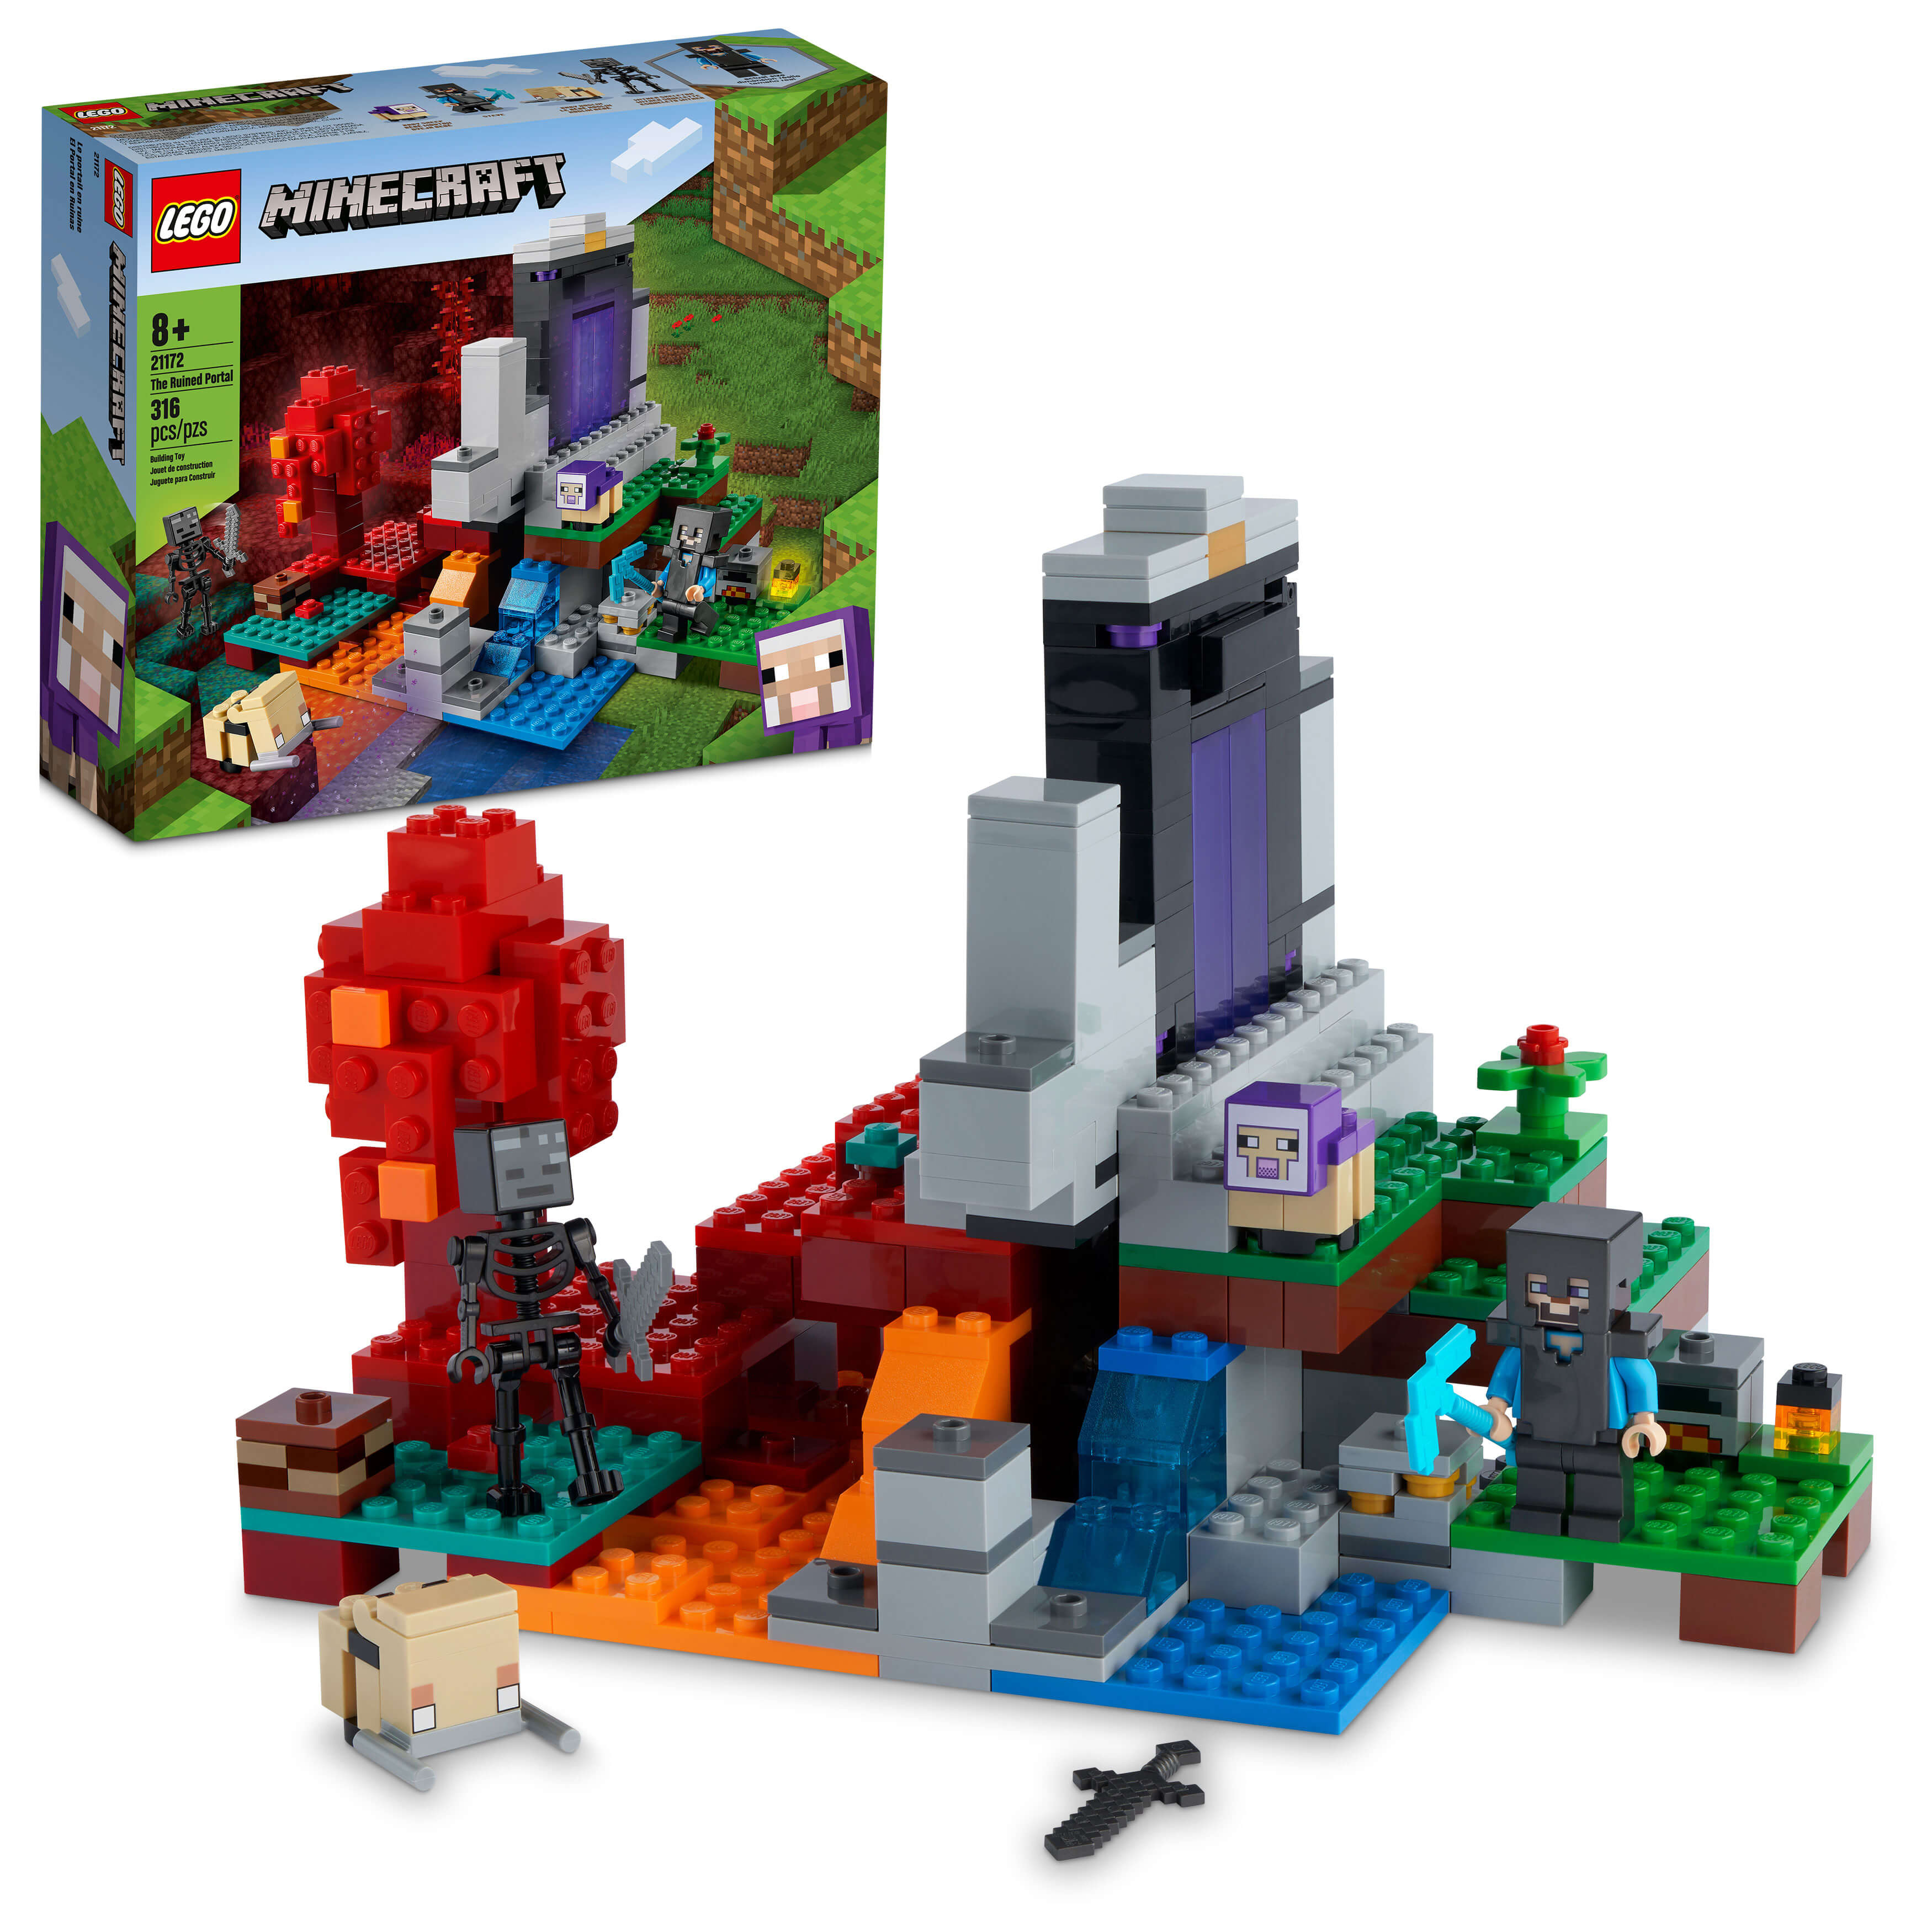 LEGO Minecraft image